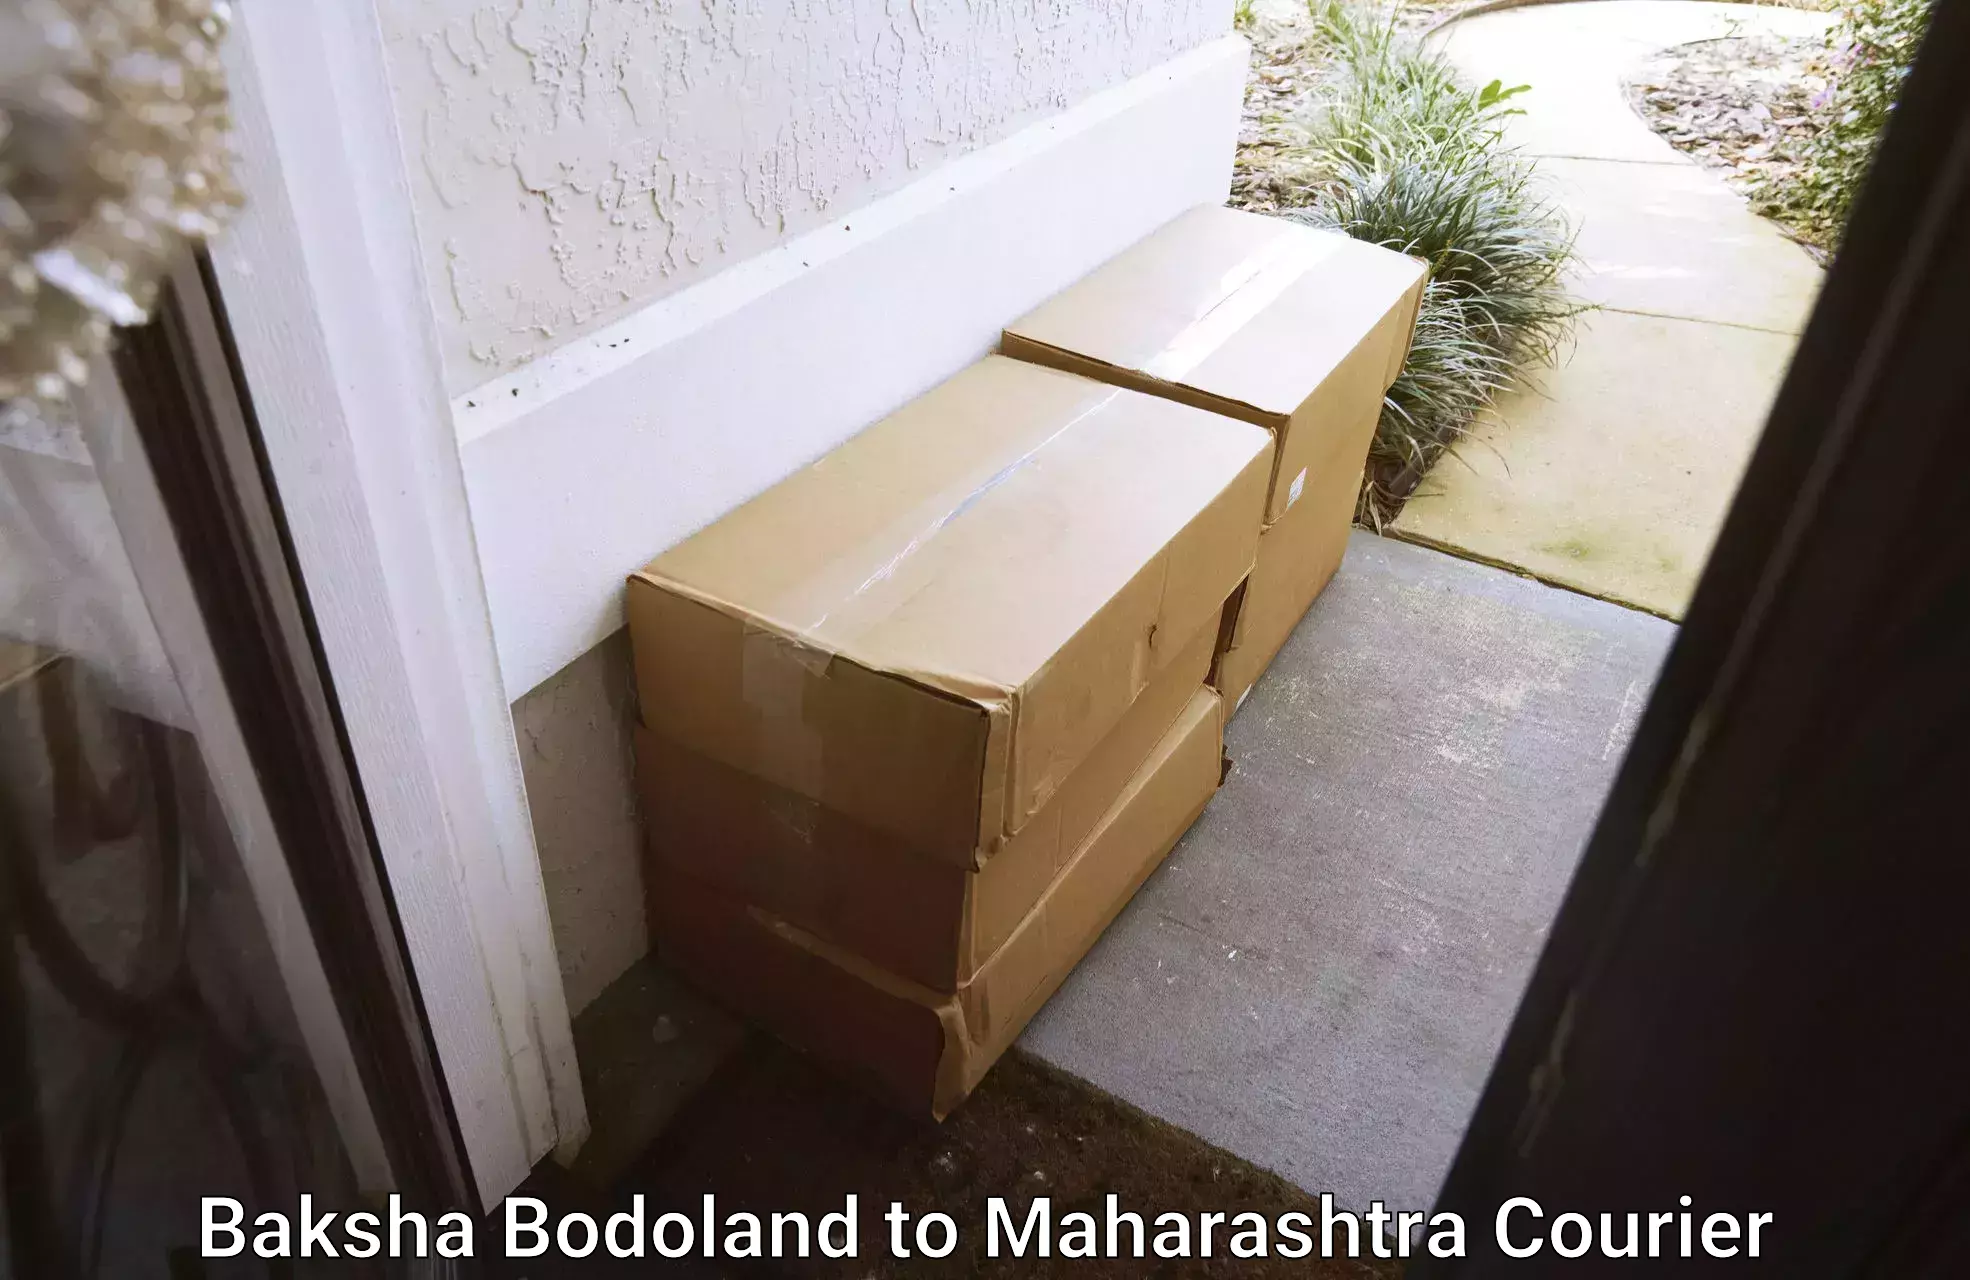 Doorstep delivery service Baksha Bodoland to Maharashtra